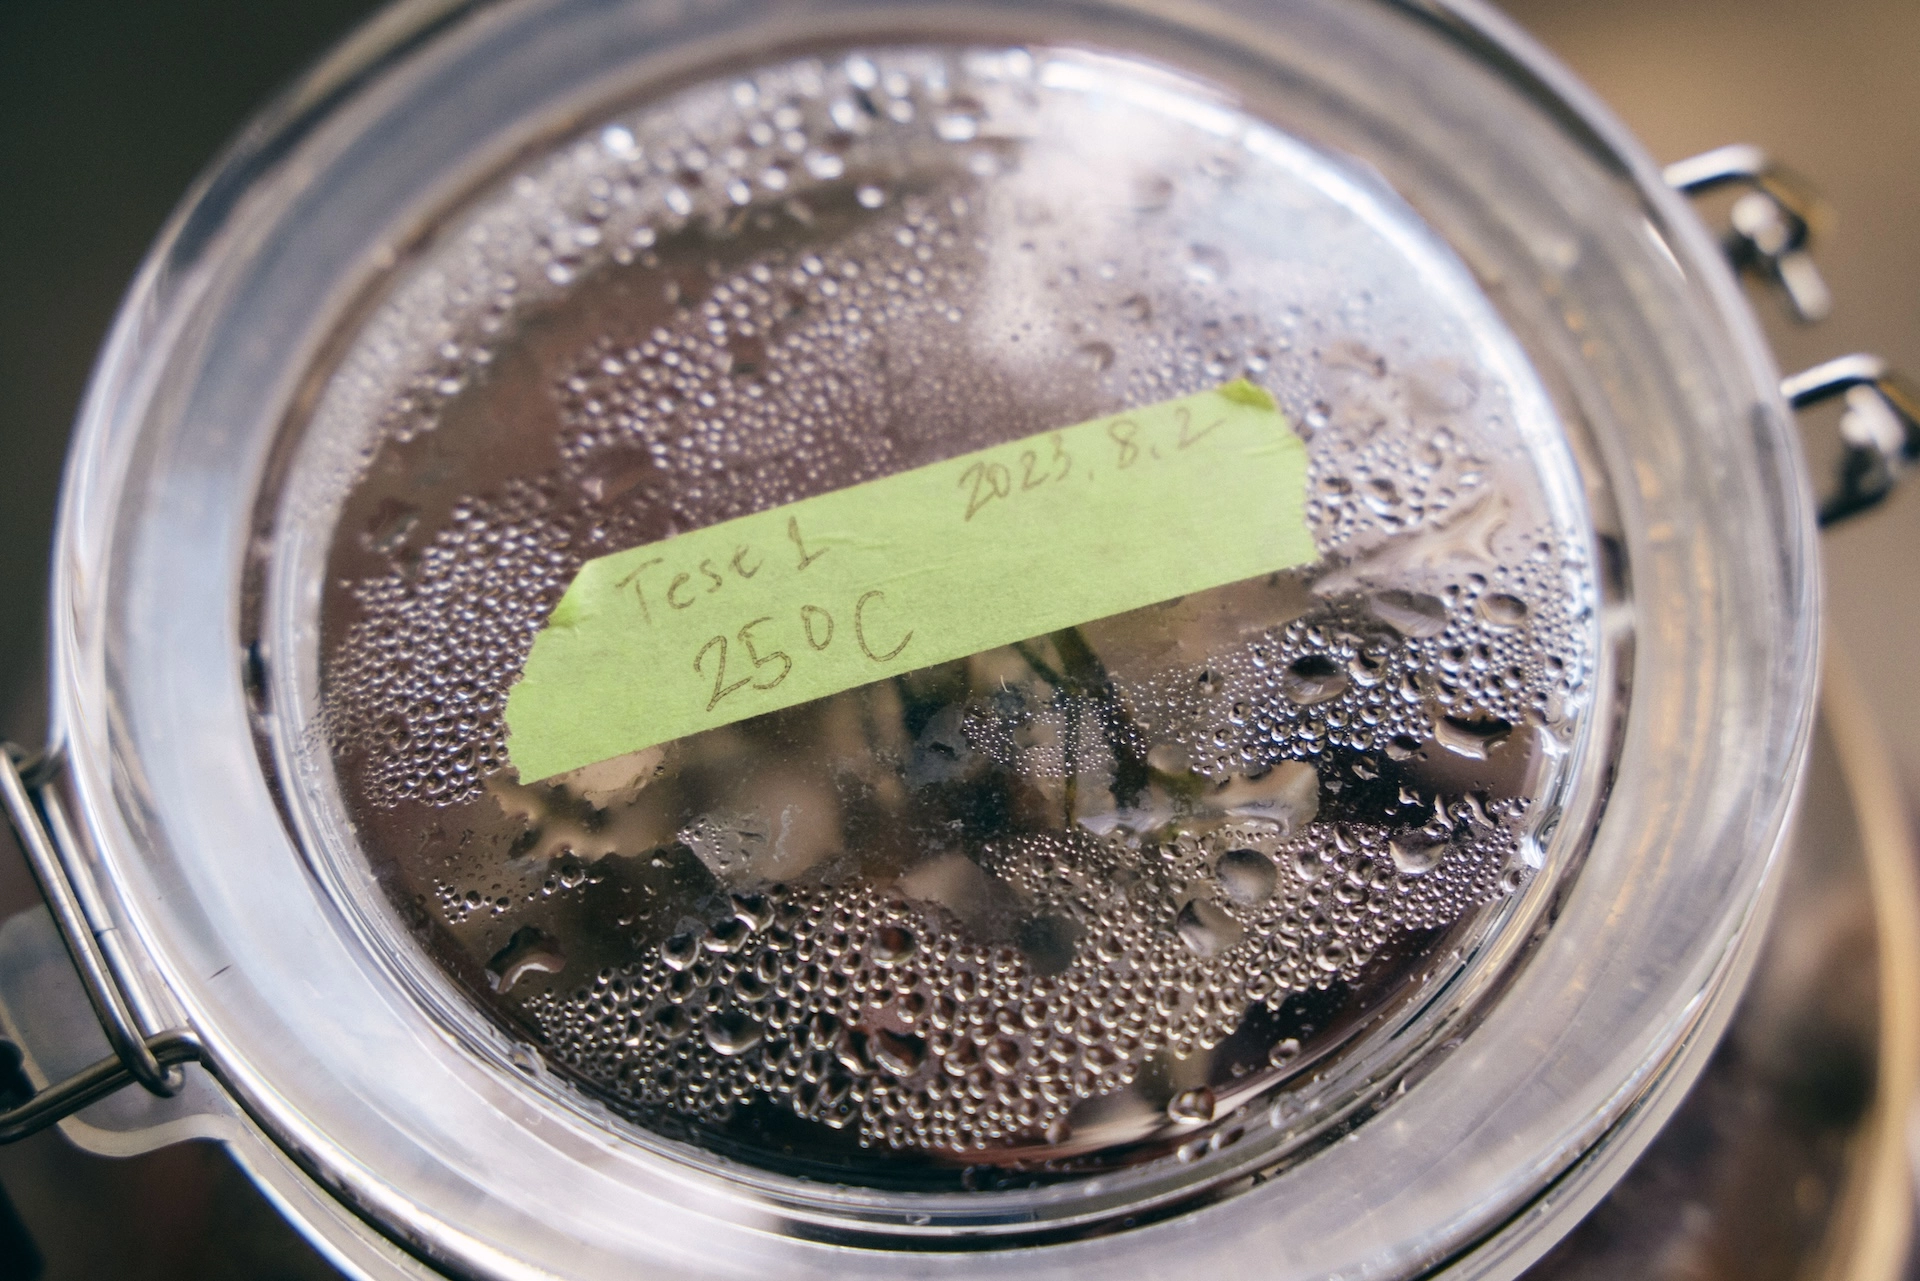 ガラス容器の蓋の上に緑色のテープが貼られており、『Test 1 25°C 2023.8.2』と手書きで書かれている。蓋の裏側には水滴がついている。